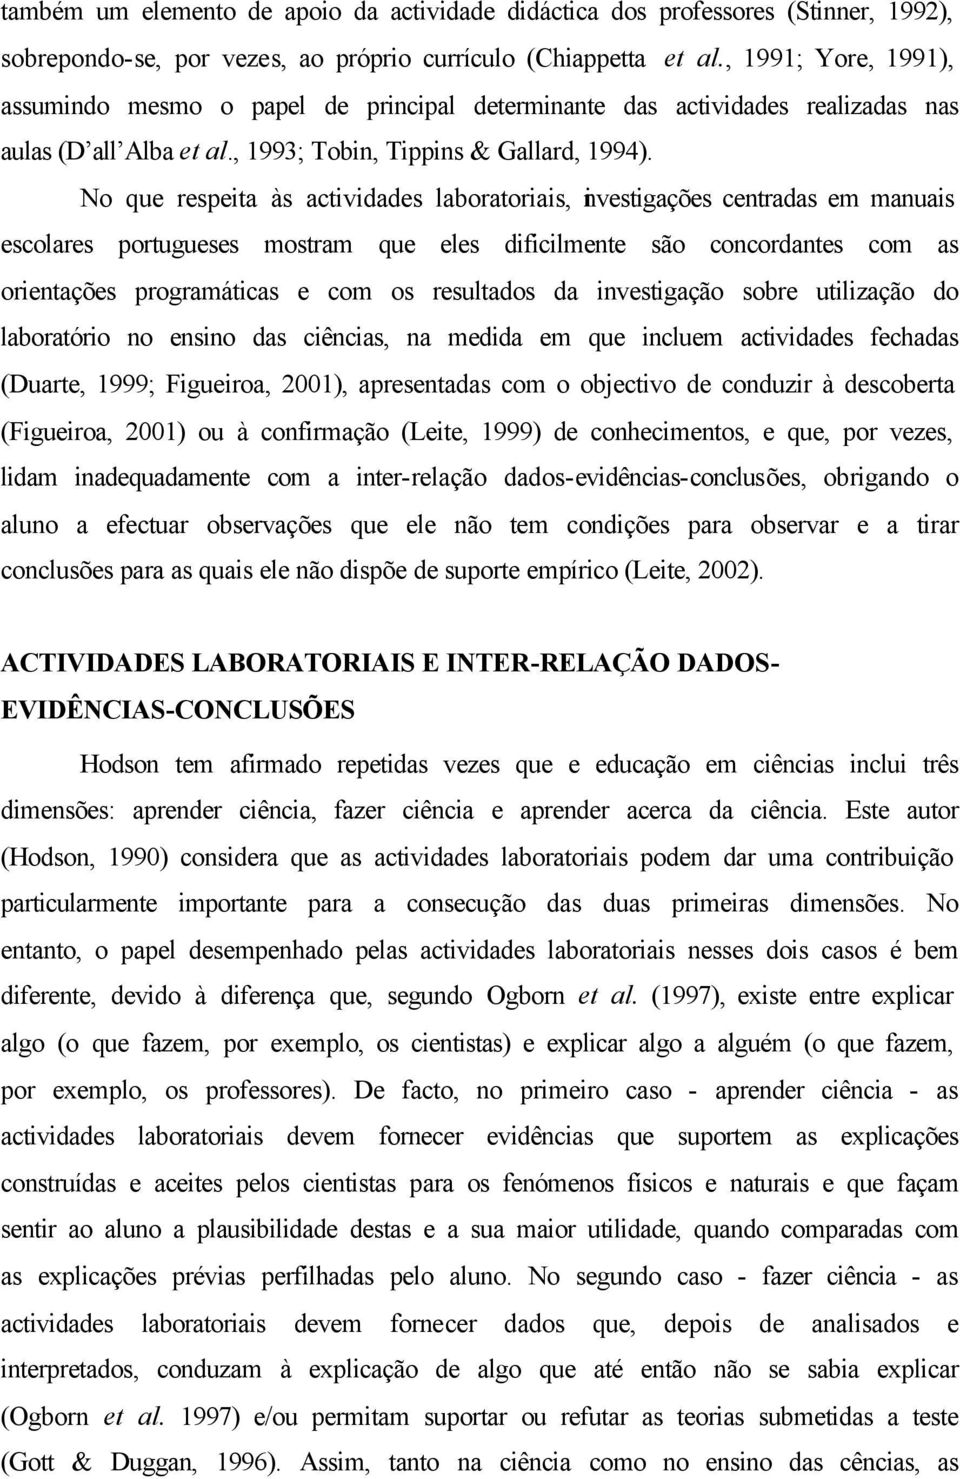 No que respeita às actividades laboratoriais, investigações centradas em manuais escolares portugueses mostram que eles dificilmente são concordantes com as orientações programáticas e com os